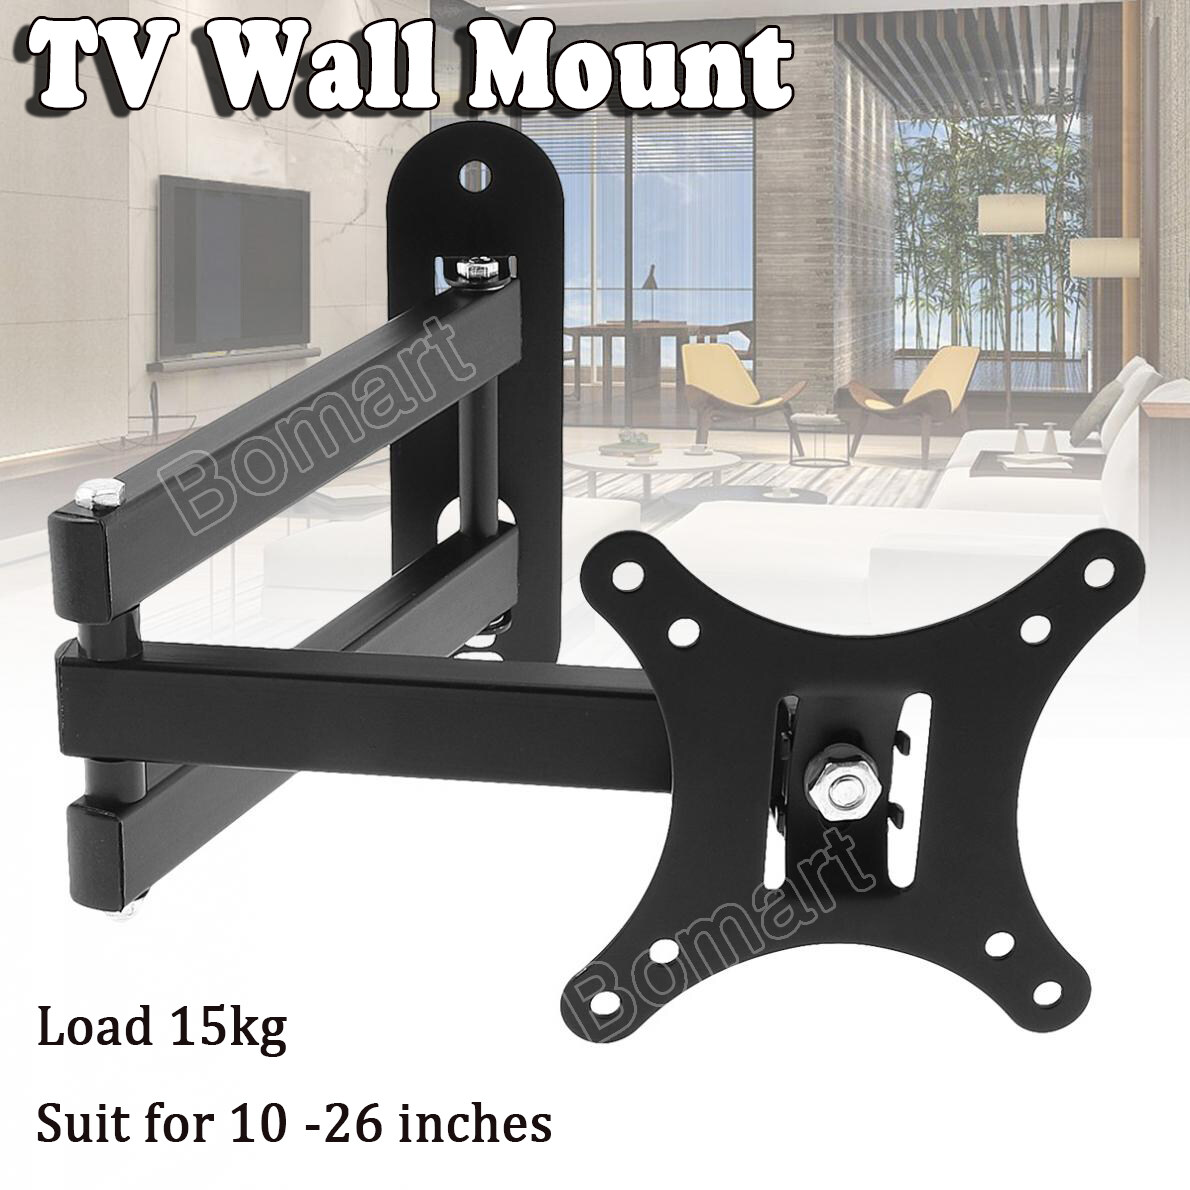 ขาแขวนทีวี ปรับมุมได้ 10 - 26 นิ้ว แบบ ที่ยีดทีวี ที่แขวนทีวี ขาแขวนยึดทีวี ขายึดทีวี Adjustable Full Motion Tilting Plasma LCD LED TV Wall Mount Bomart